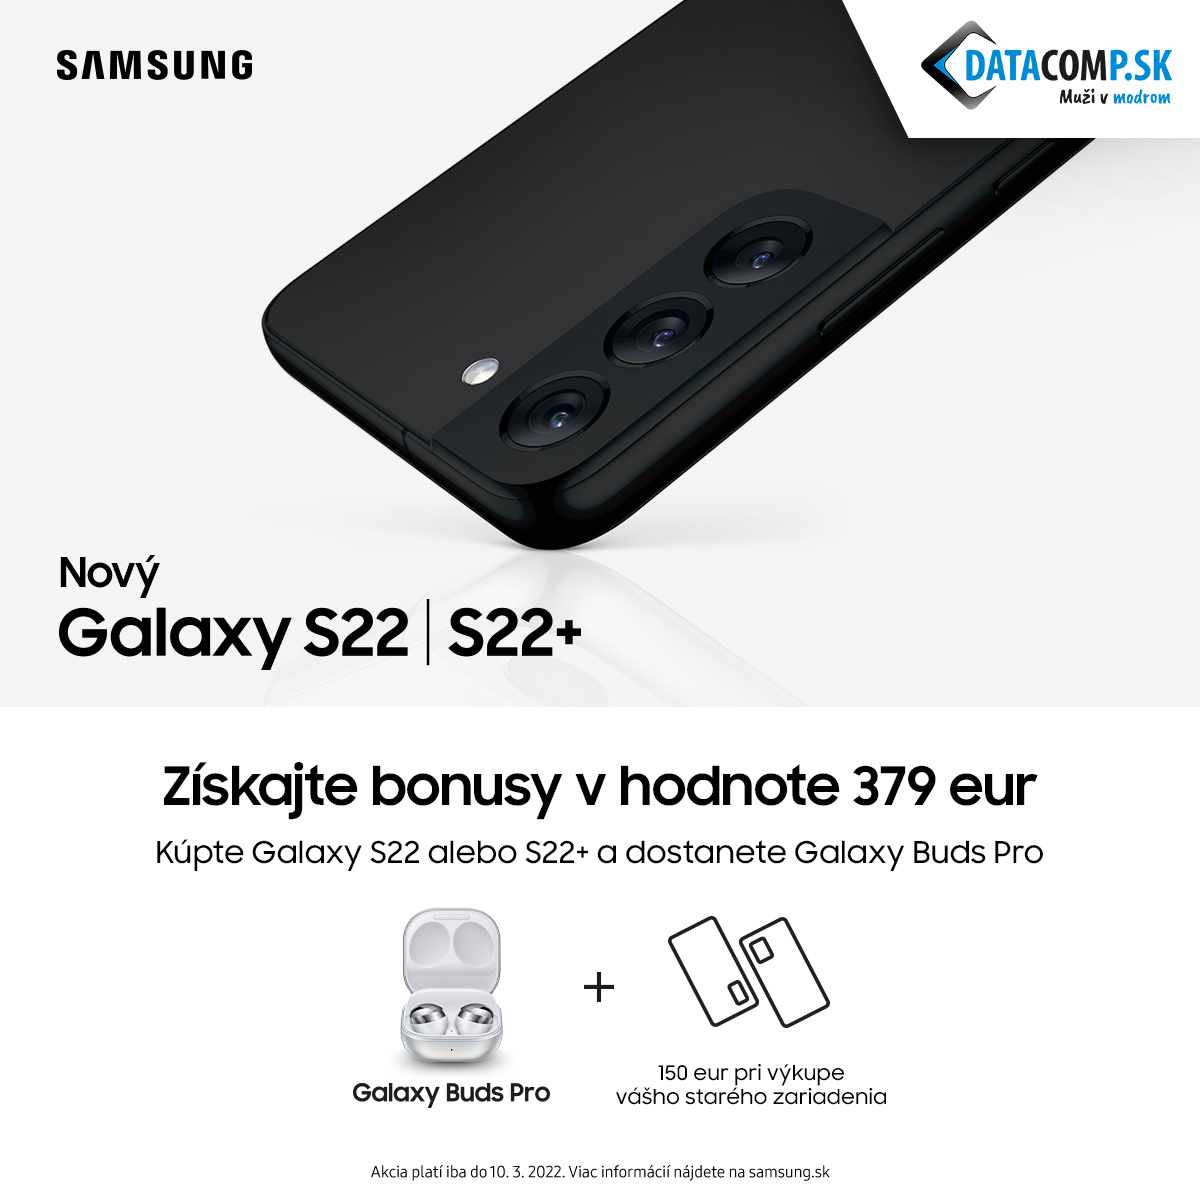 Samsung Galaxy S22 preorder